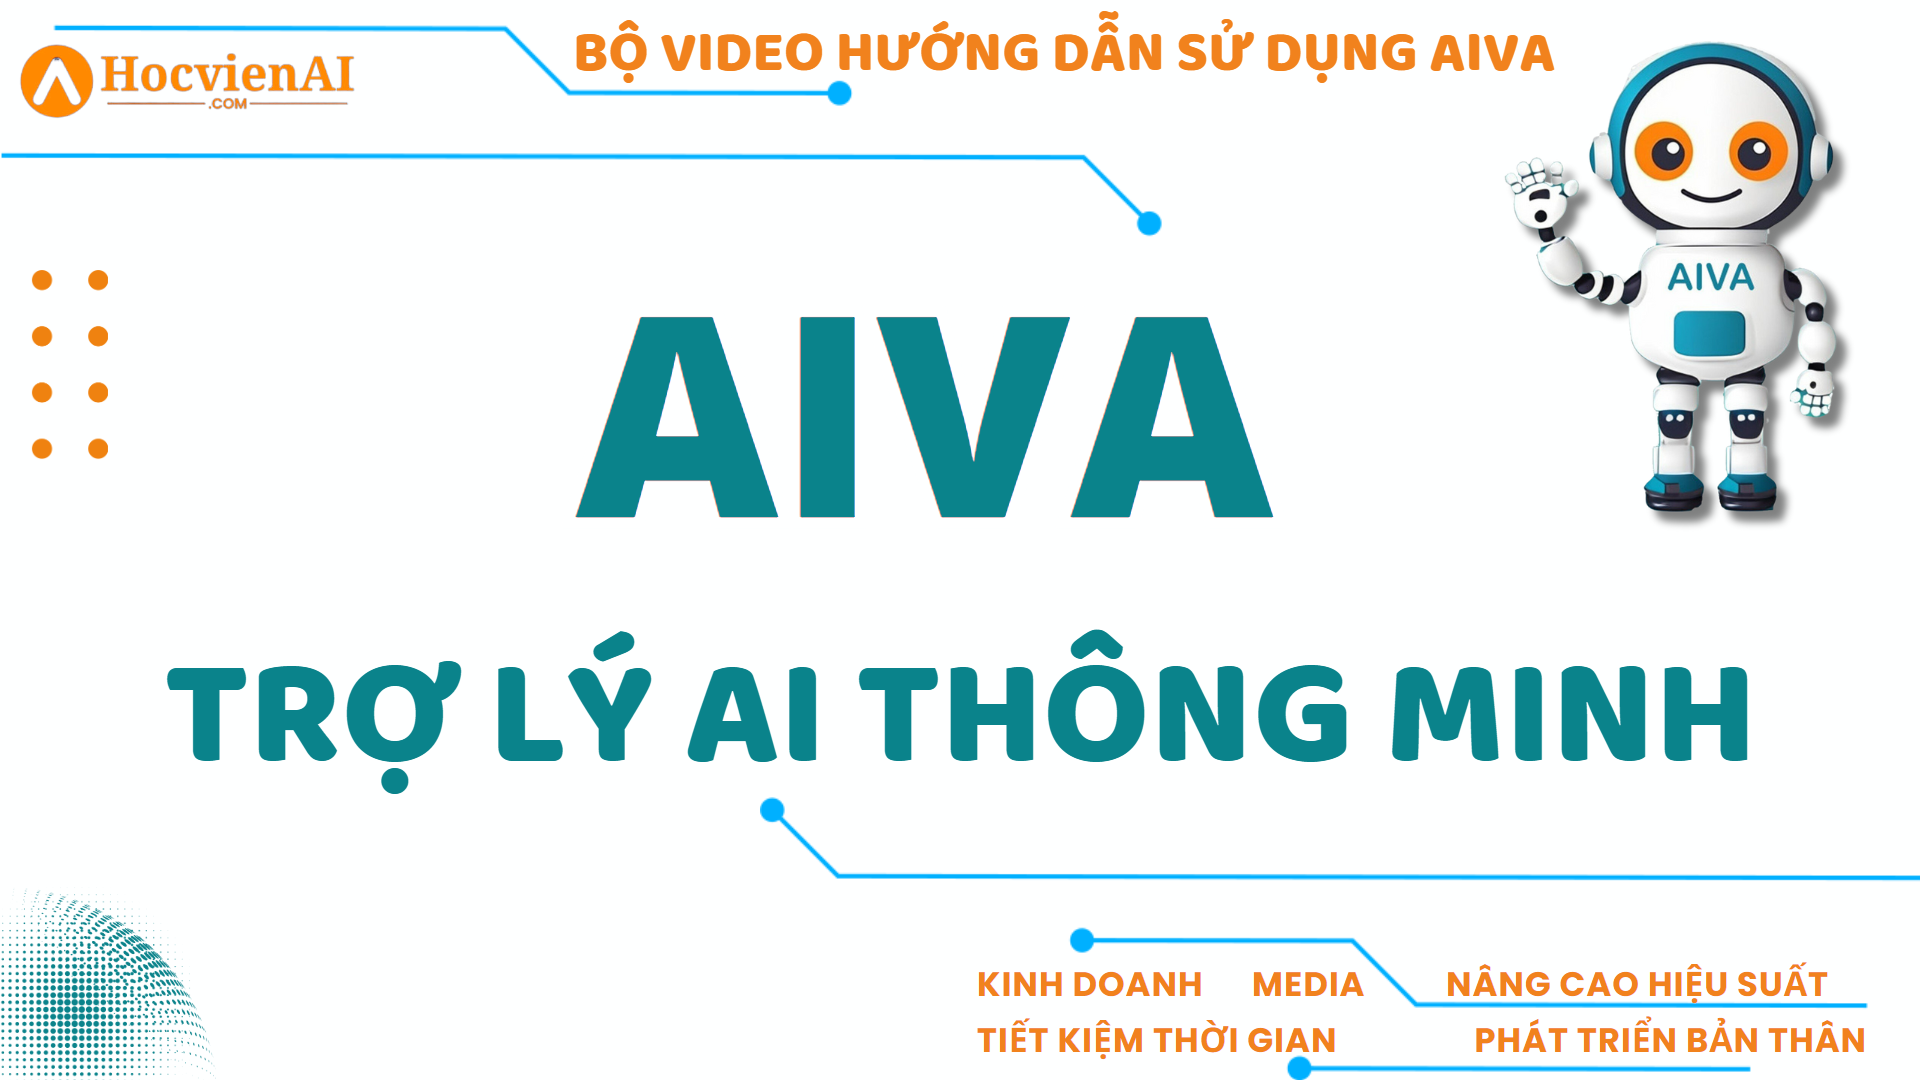 AIVA - Hướng dẫn sử dụng AIVA và các công cụ AI